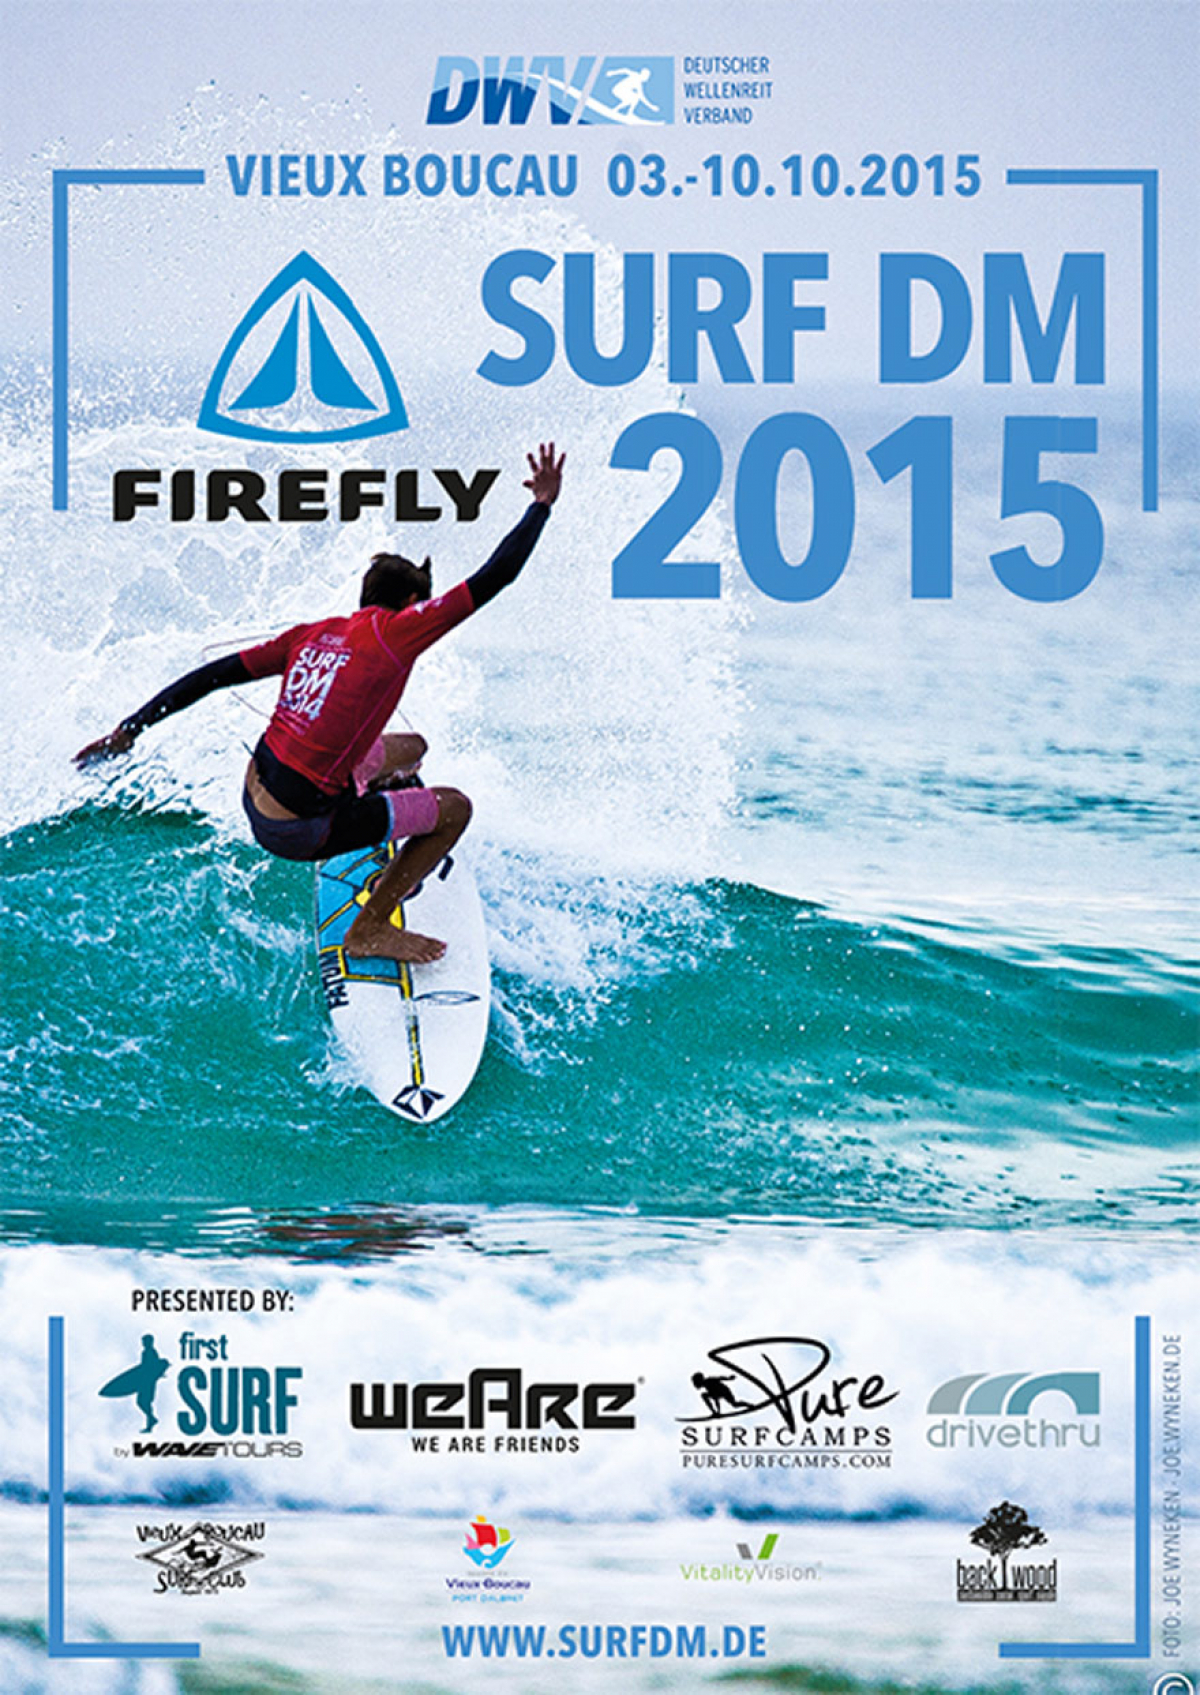 Surf DM 2015 - Vieux Boucau